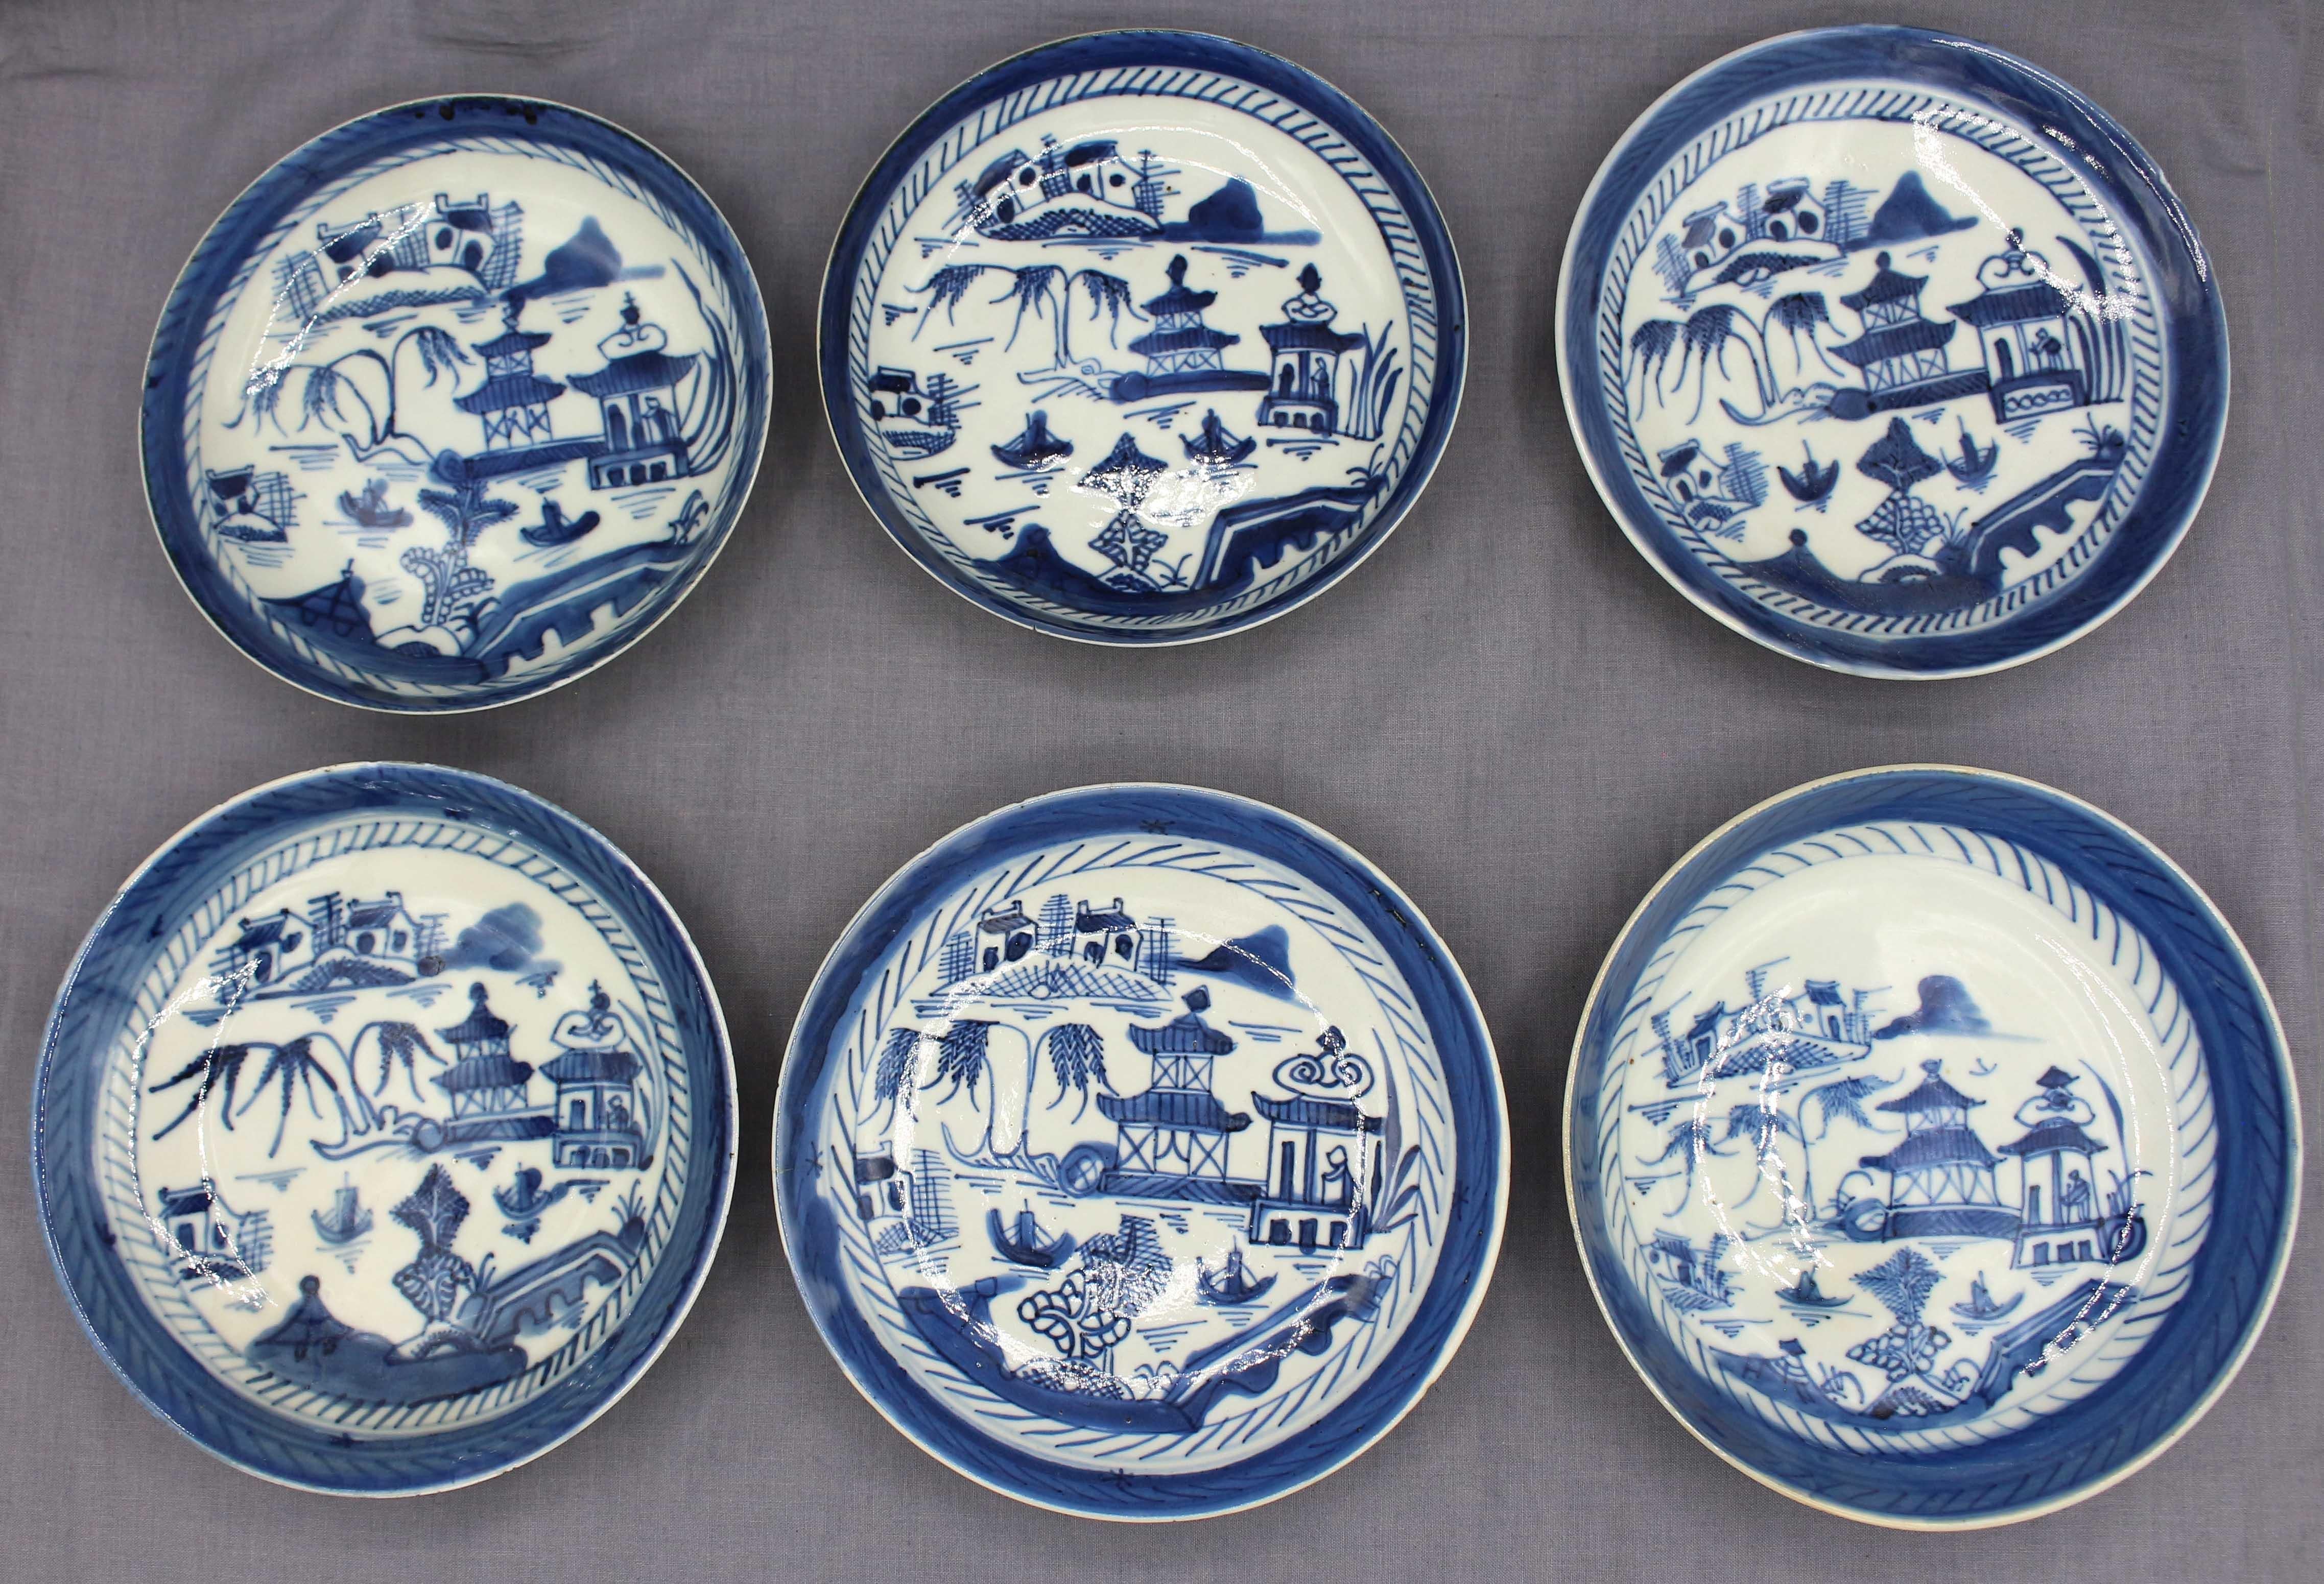 Circa 1800-1830 groupe de 6 bols bas en porcelaine de Canton bleue, exportation chinoise. Idéal pour les fruits et les desserts. Empotage fin et mince. Toutes, sauf une, présentent une ou plusieurs entailles au niveau de la bordure ; deux d'entre